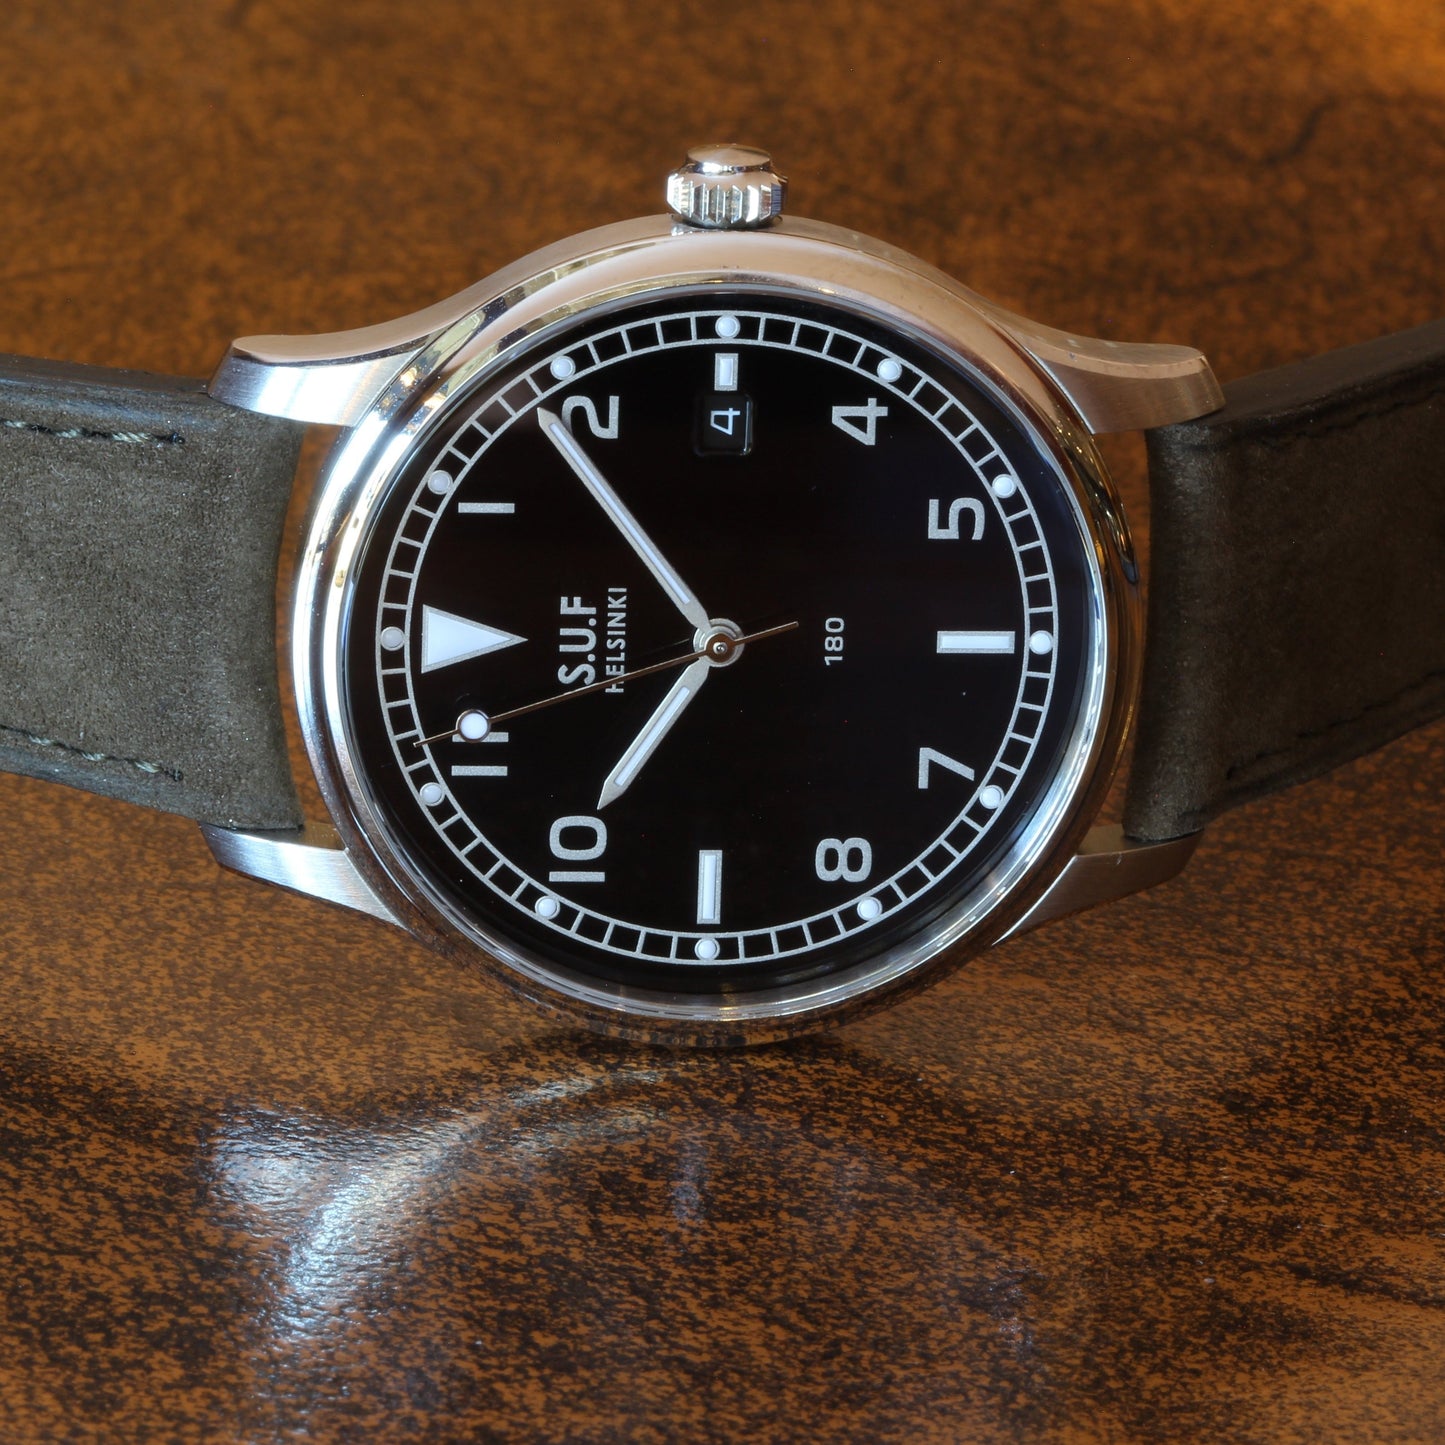 SUF Helsinki "180" S Black dial Ltd Edition Field watch on strap